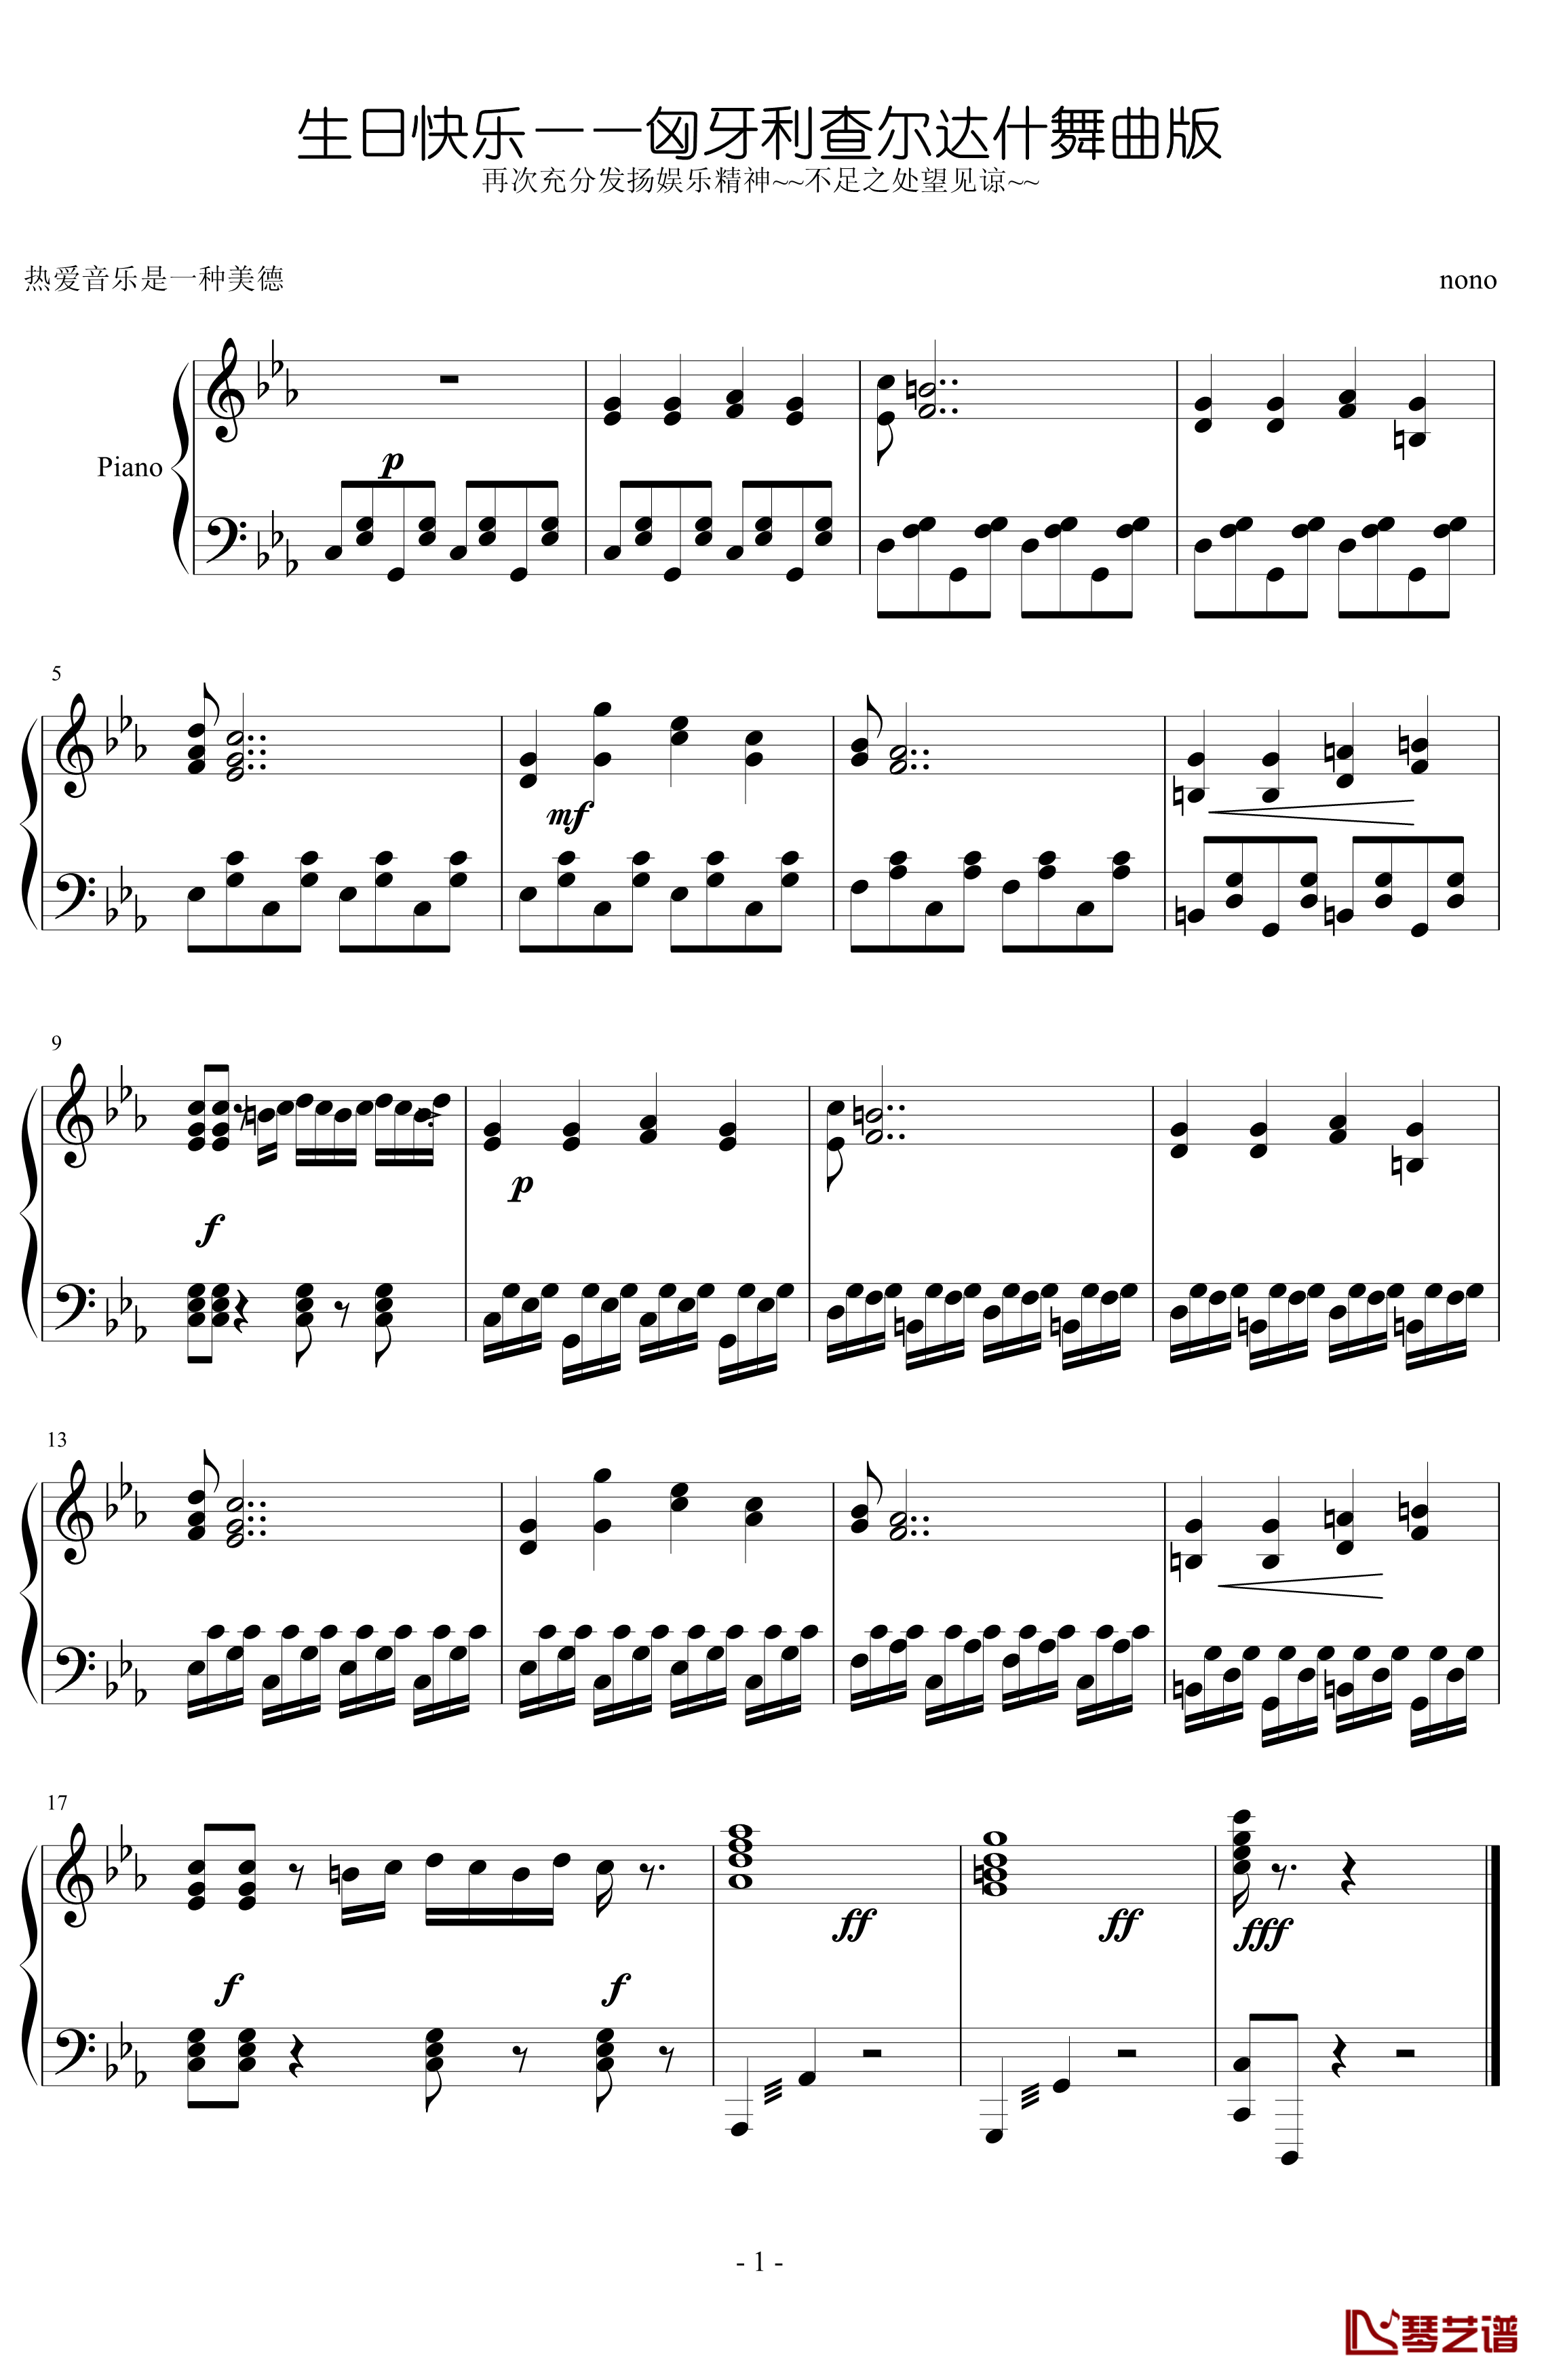 生日快乐钢琴谱-匈牙利查尔达什舞曲版-世界名曲1